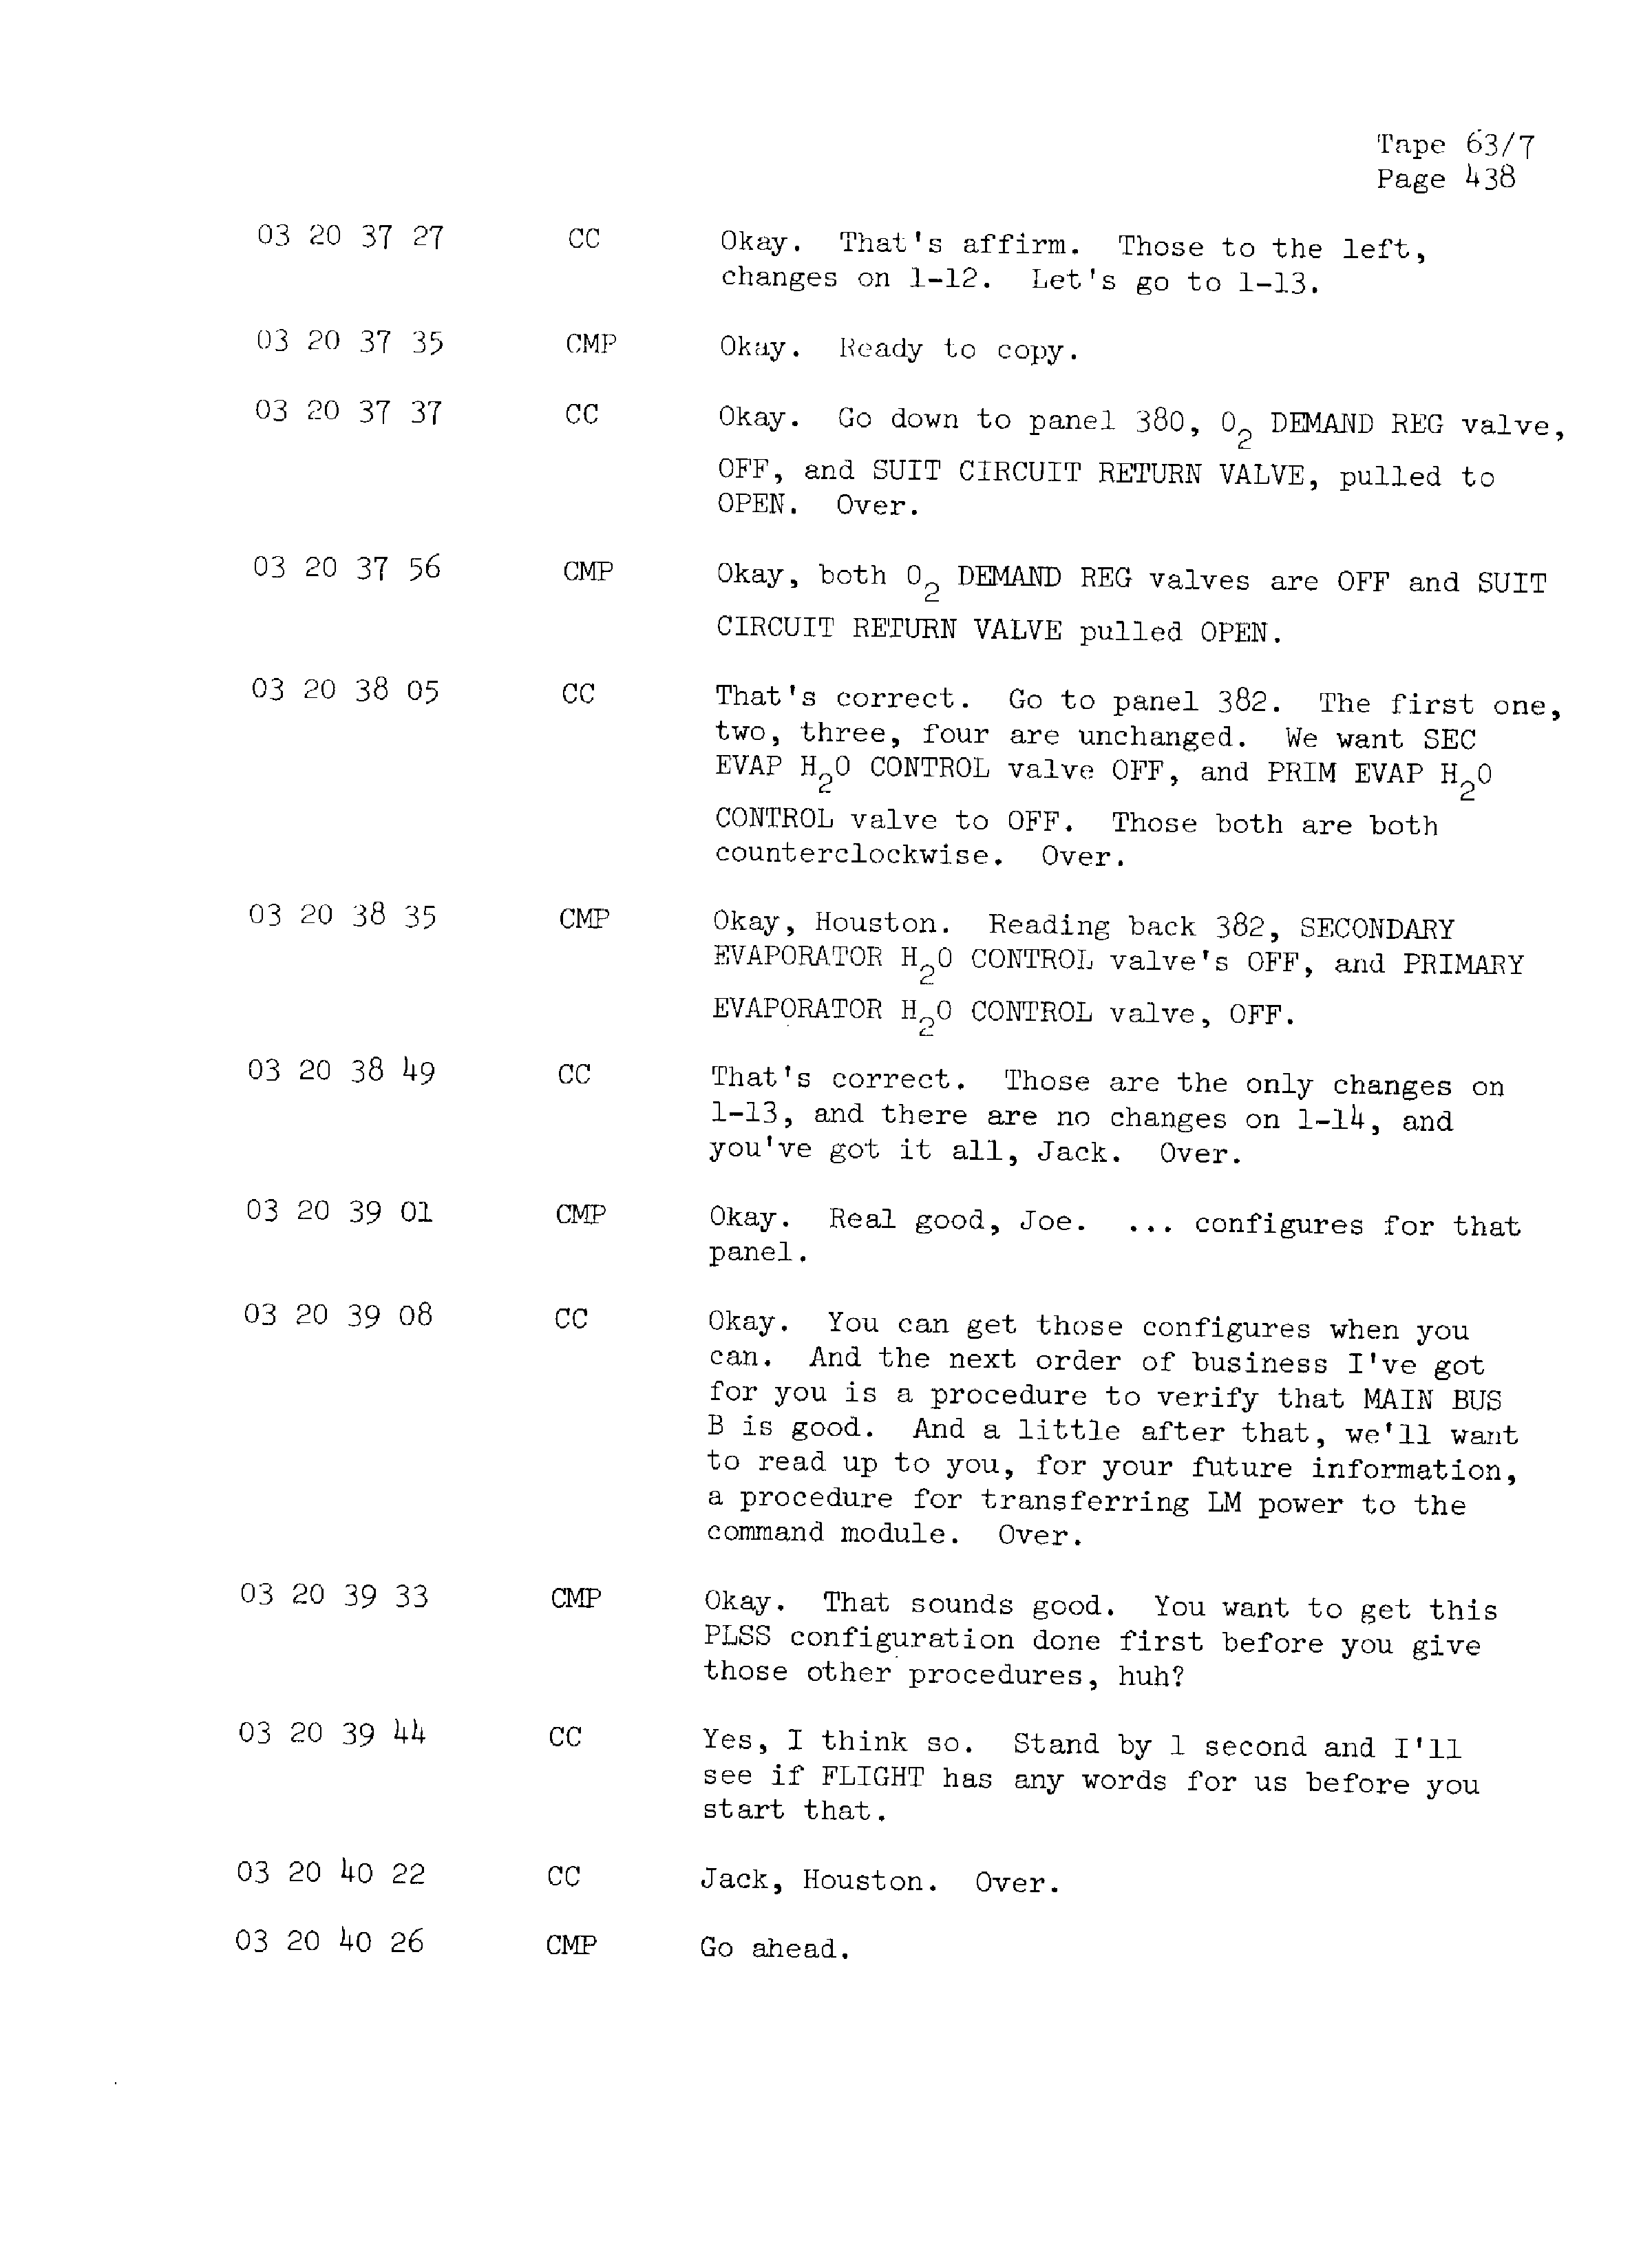 Page 445 of Apollo 13’s original transcript